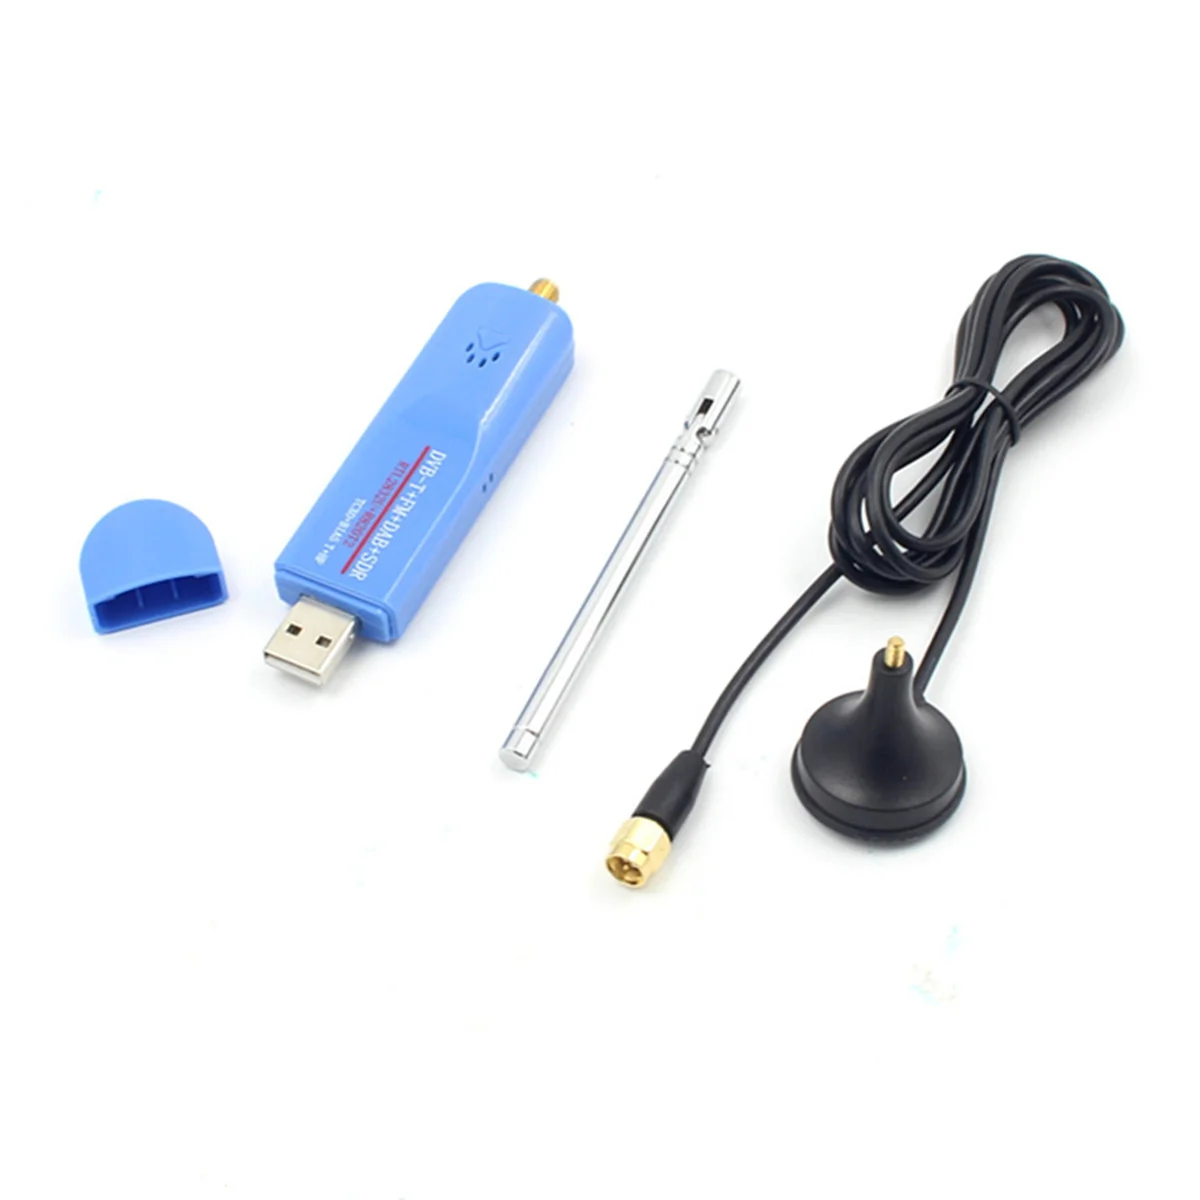 

USB-ключ с защитой от электростатического разряда-Φ 1PPM SMA F Цифровой Низкий тюнер, радиоприемник, комплект антенн для Windows